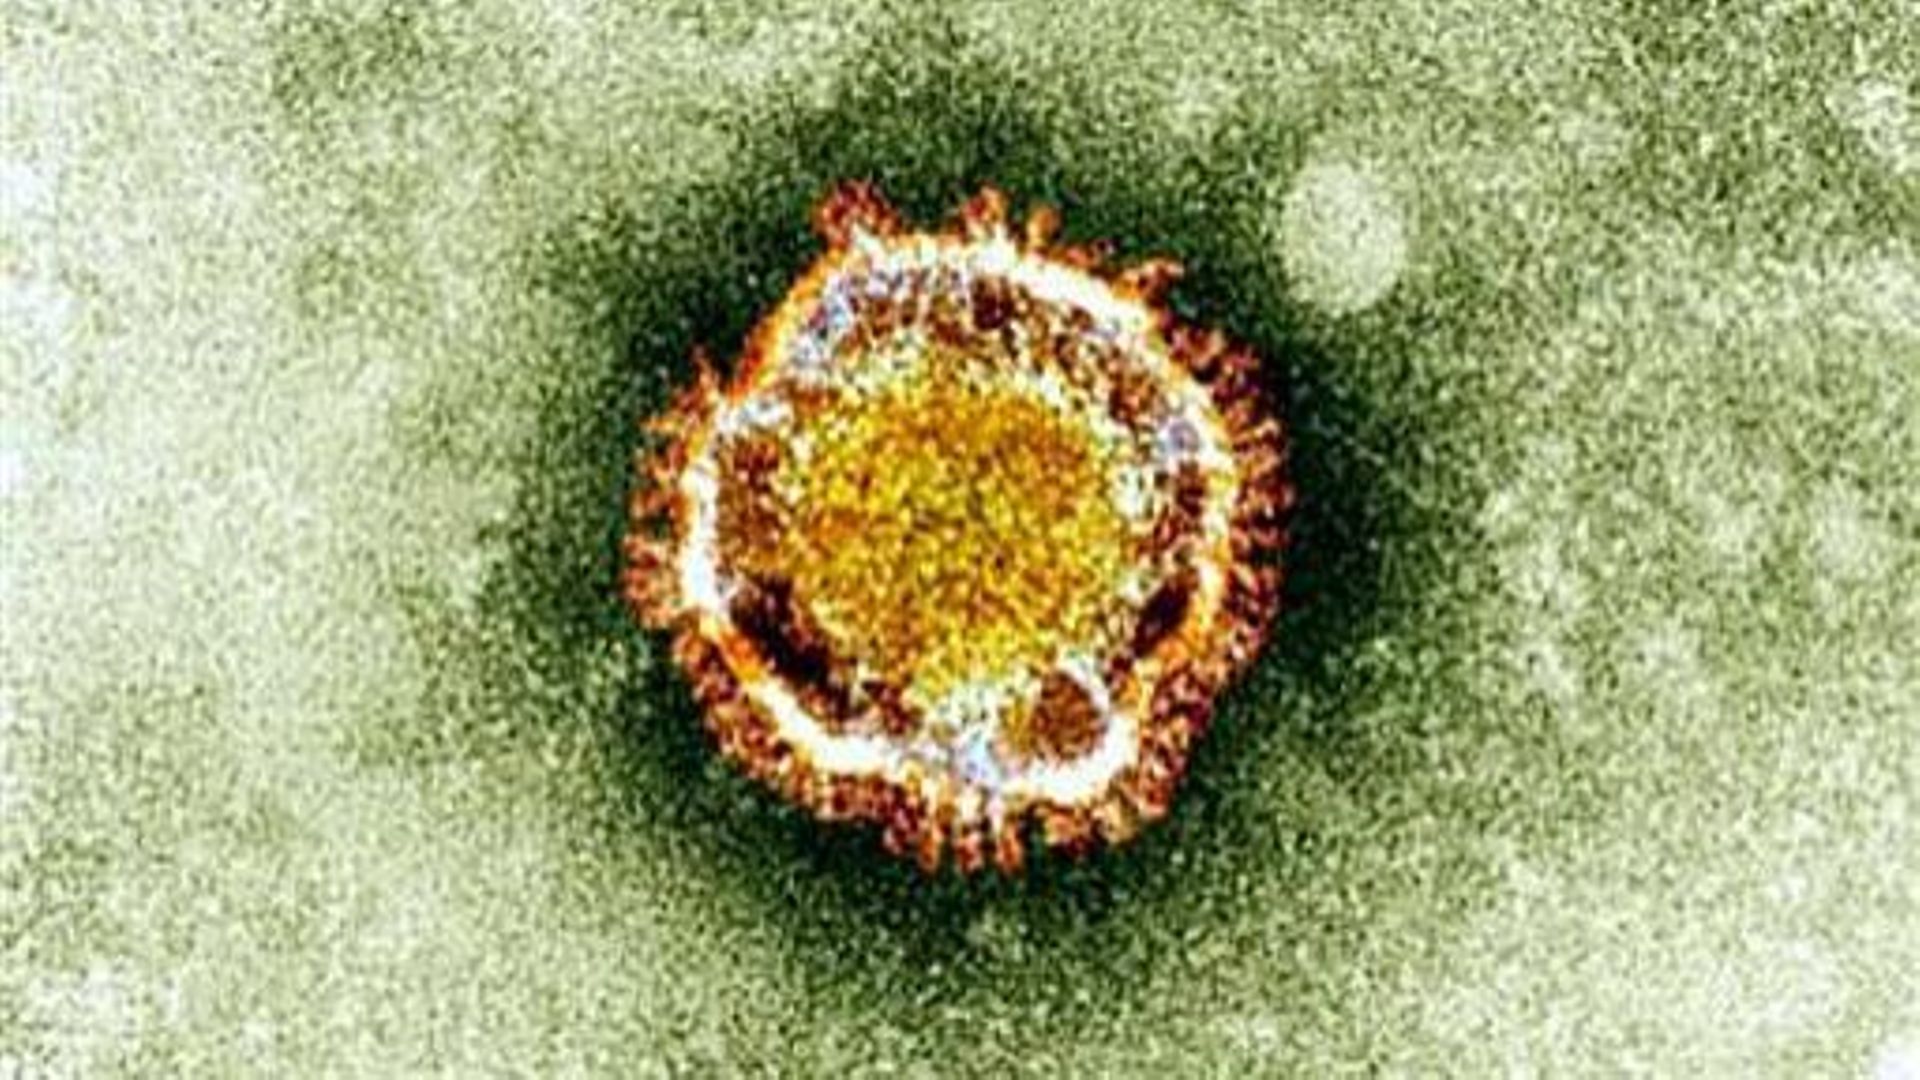 Photo non datée du nouveau coronavirus vu d'un microscope électronique